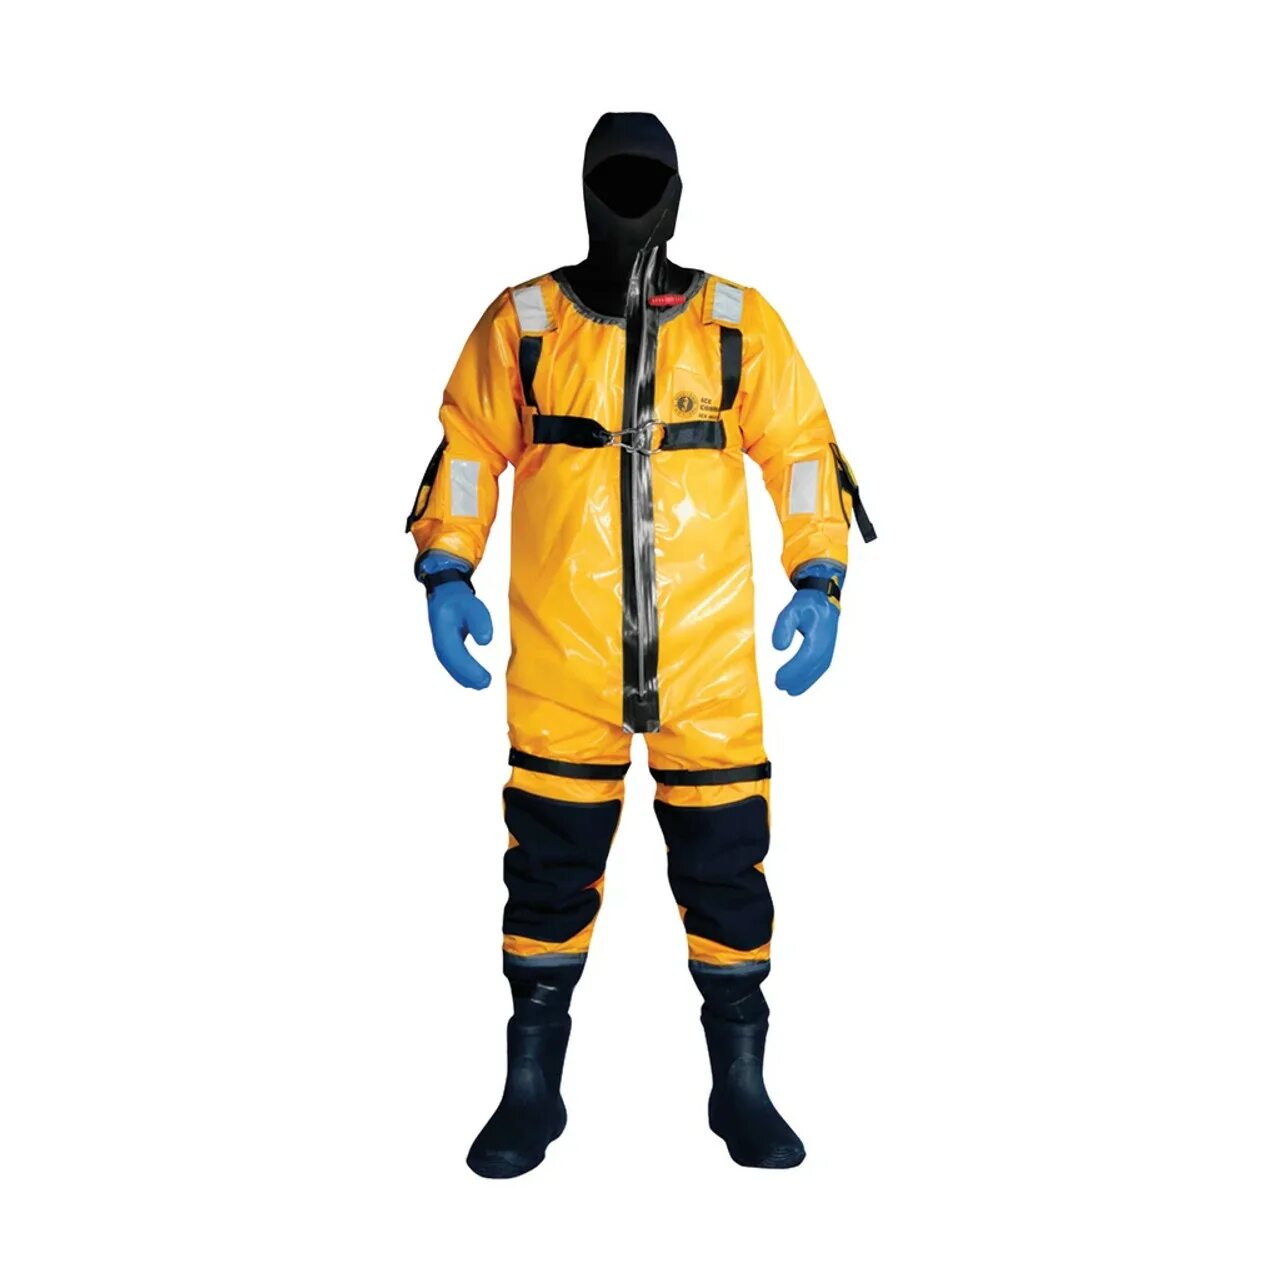 Надувной спасательный костюм. Спасательные костюмы для воды. Гидрокостюм спасательный. Костюм спасательный морской. Костюм для спасения на воде.